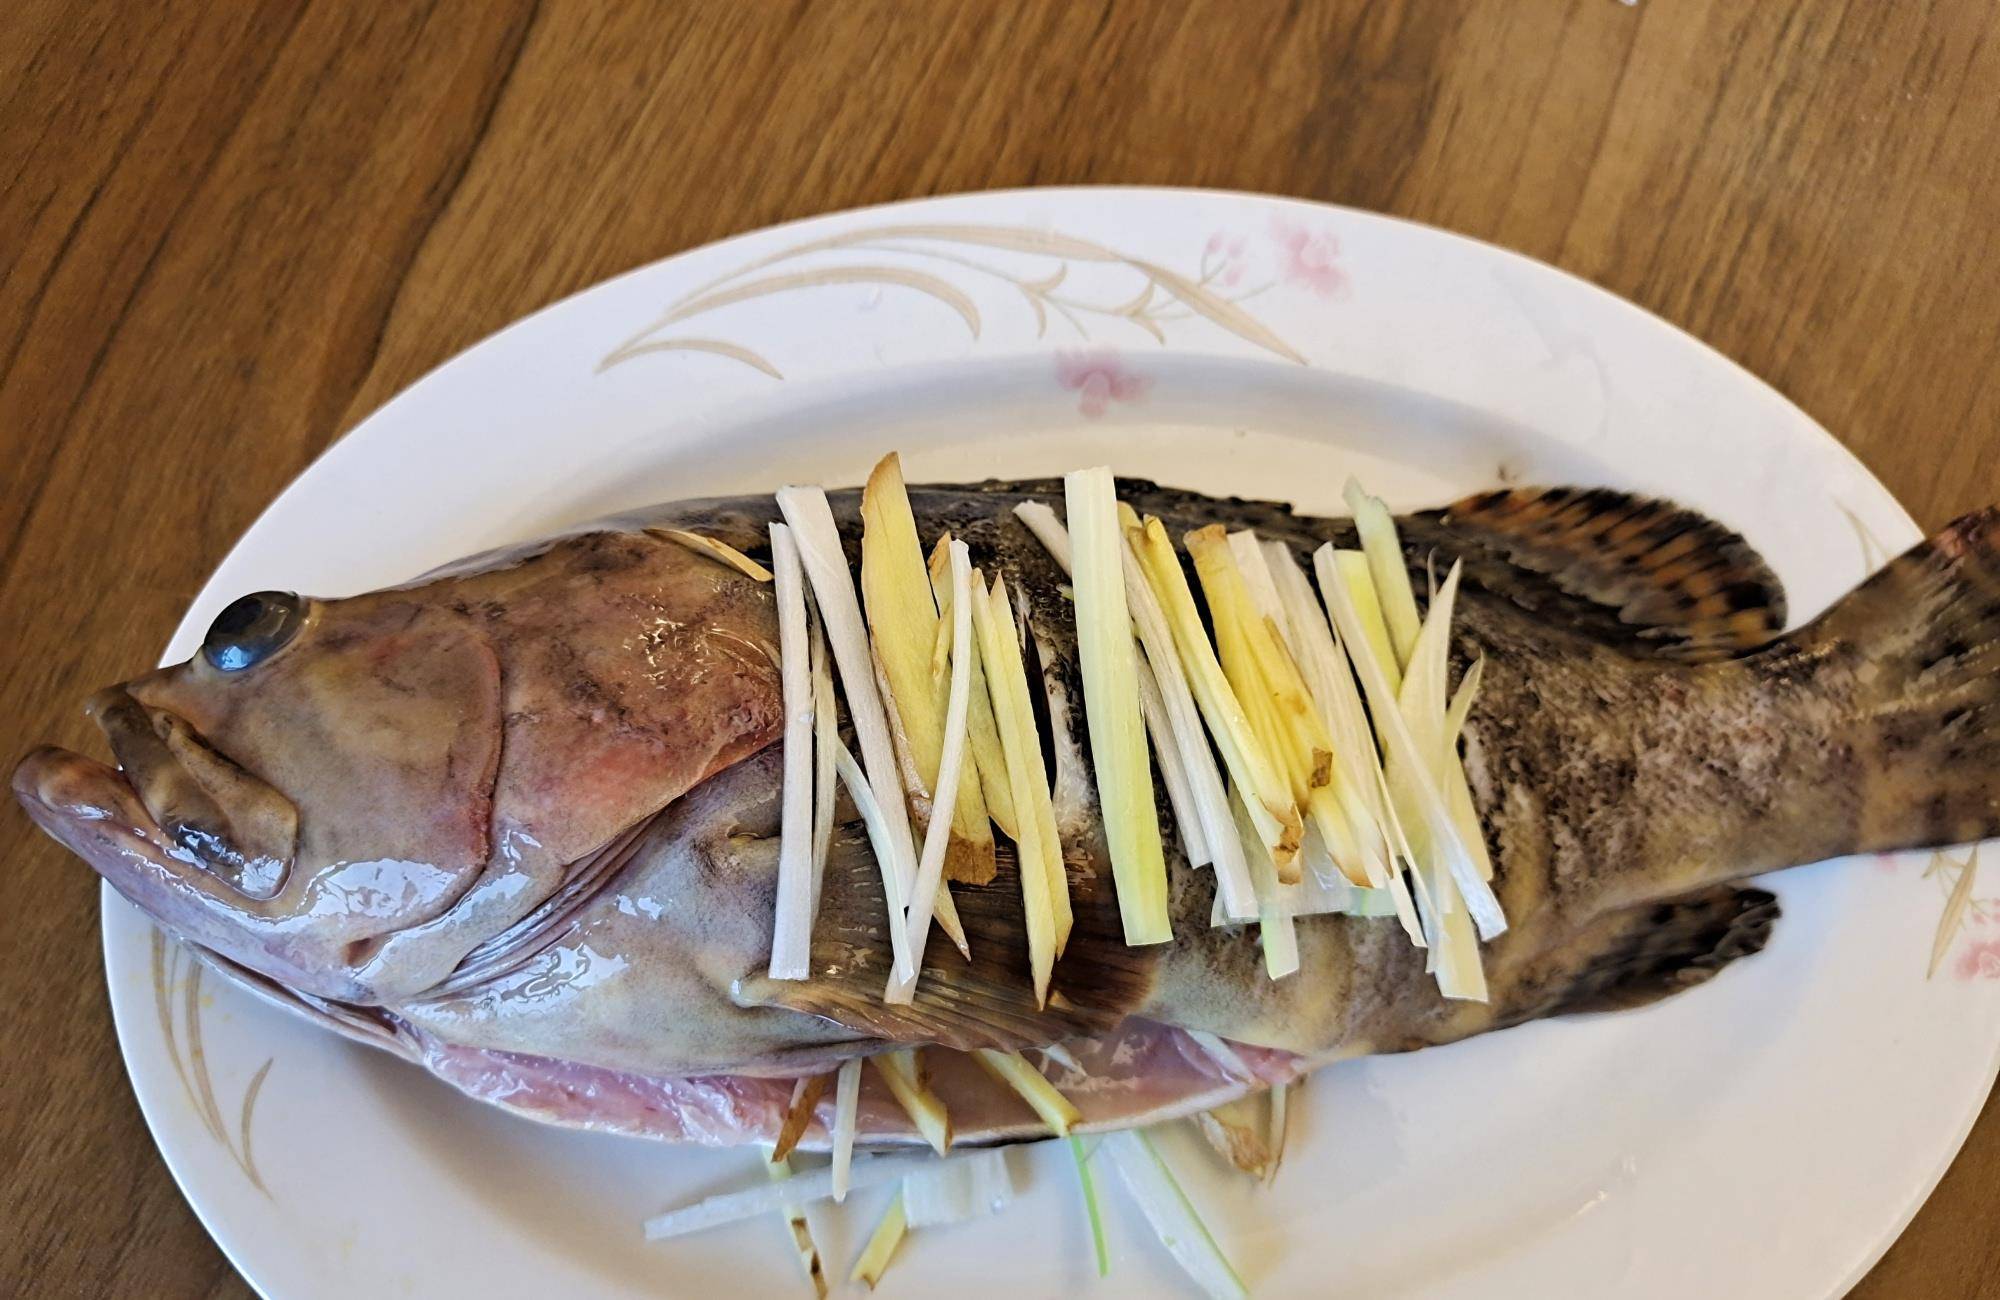 原创15块钱一斤的石斑鱼教你清蒸石斑鱼的做法肉质鲜嫩营养丰富